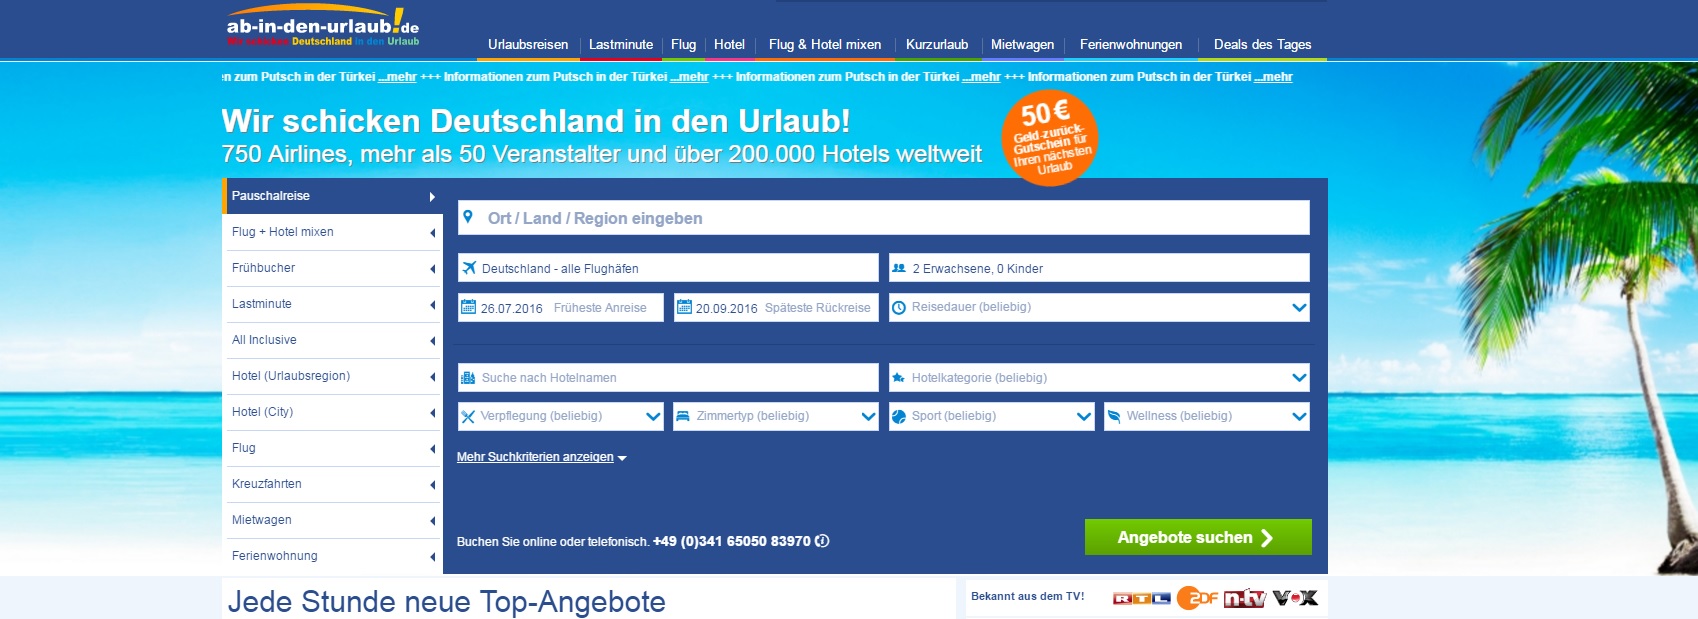 Screenshot Startseite ab-in-den-urlaub.de am 19.07.2016